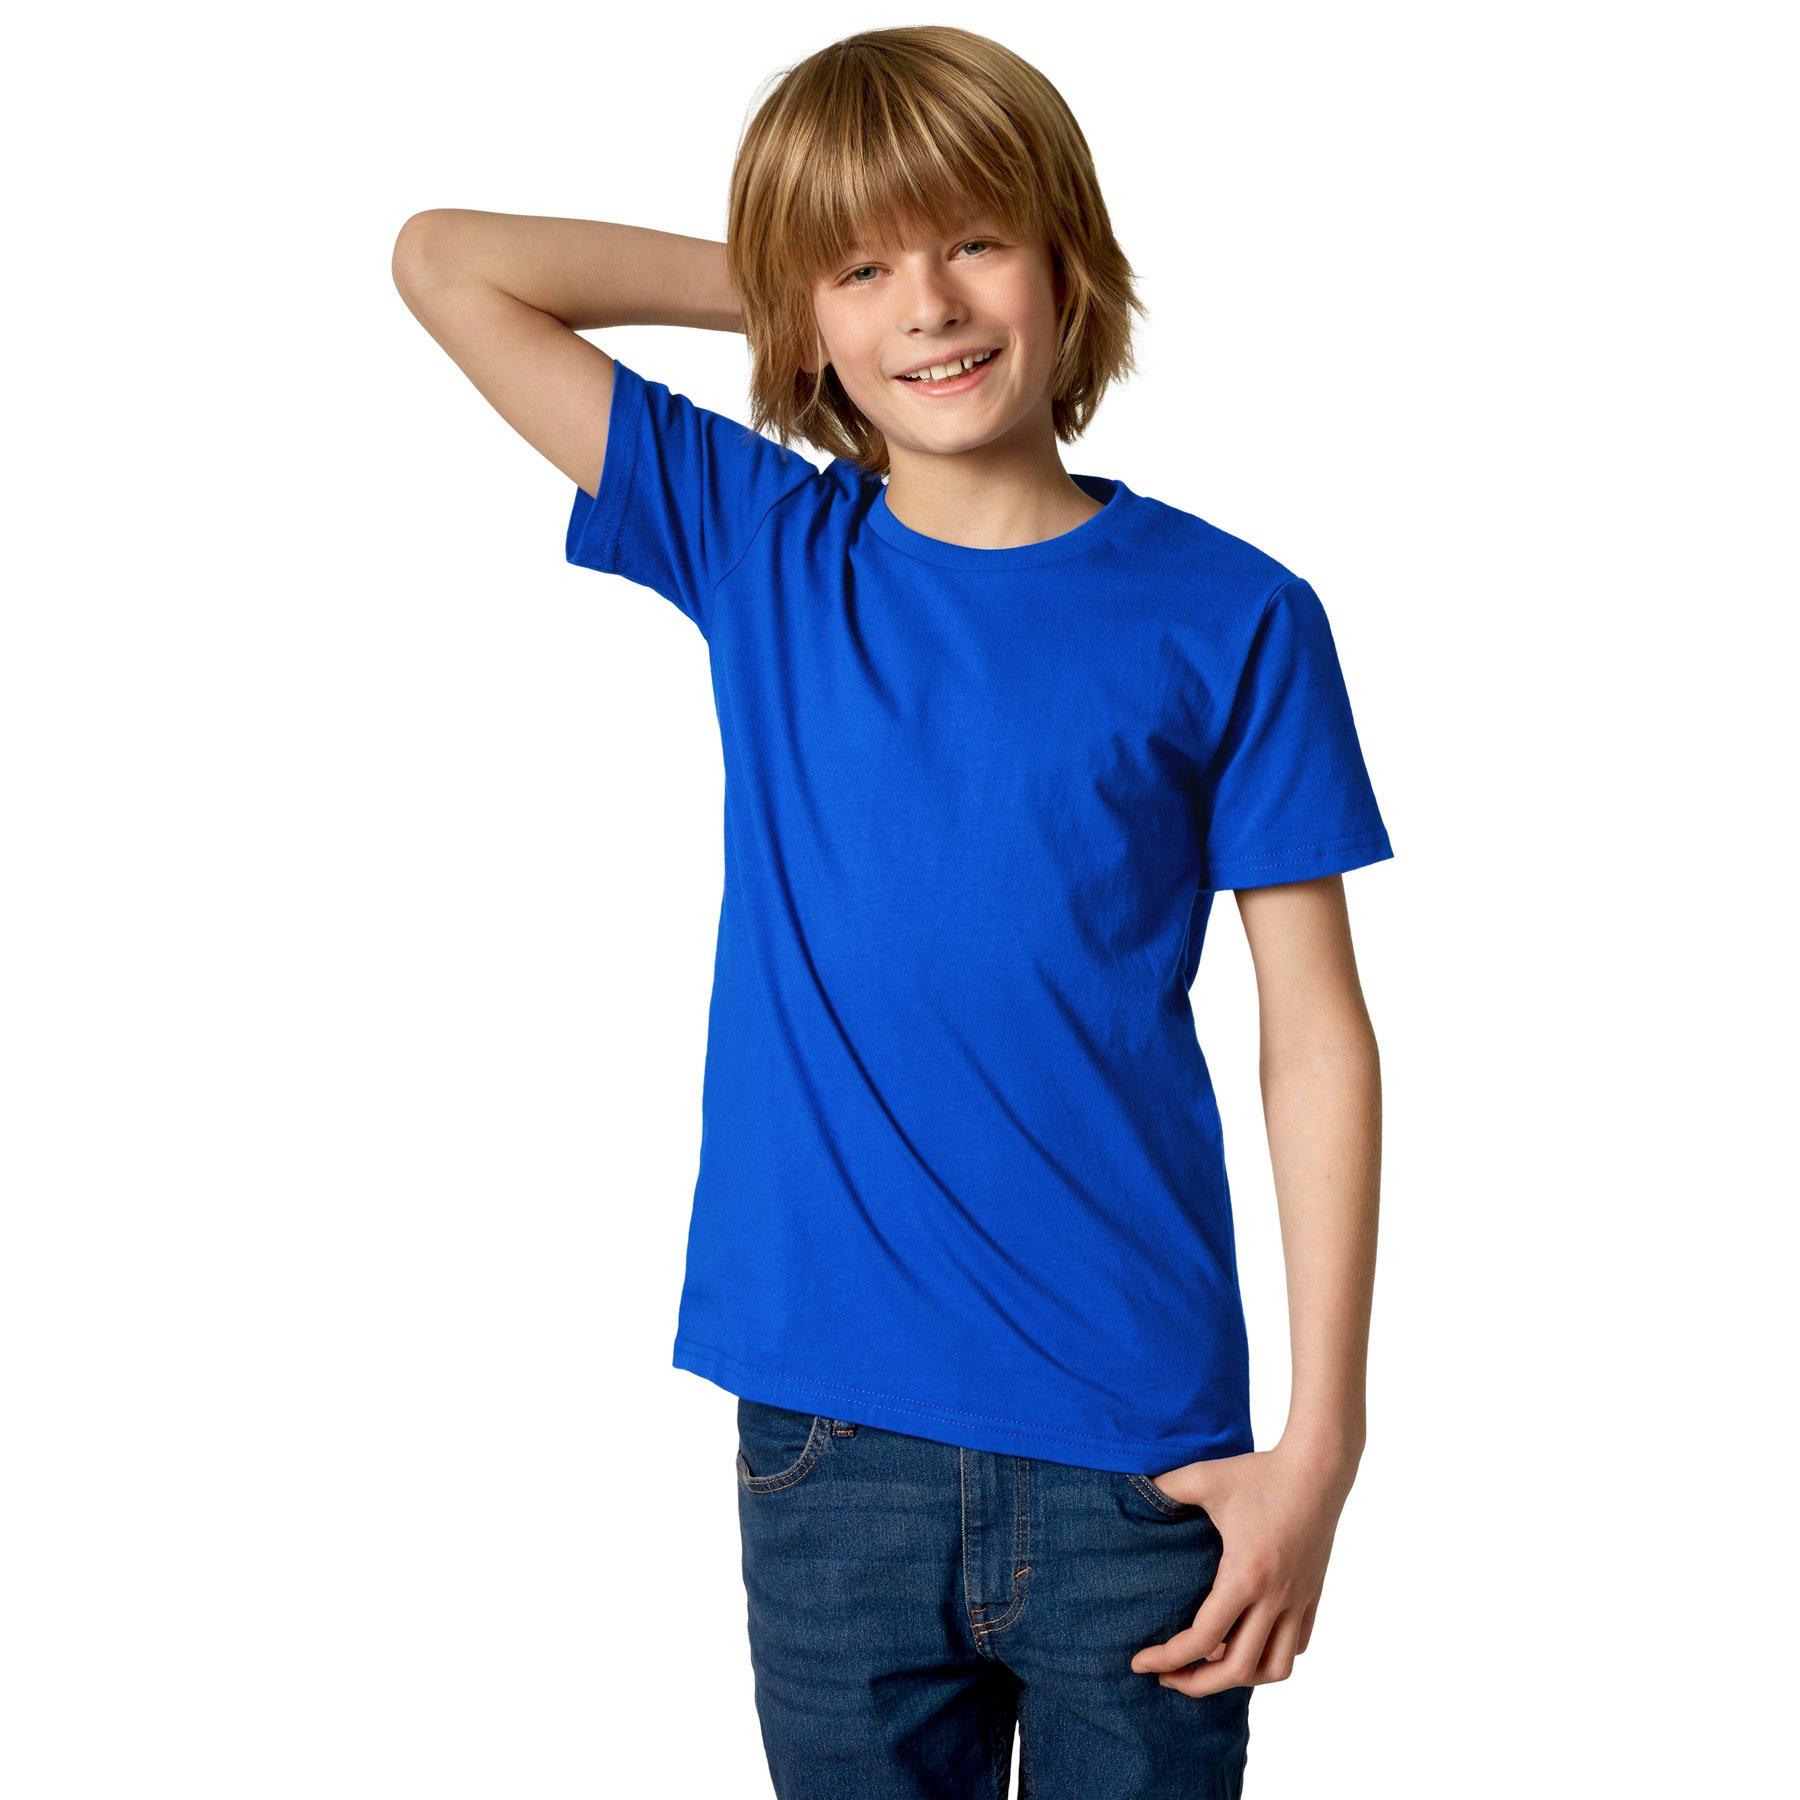 T-shirt Kinder Jungen Blau 116 von Tectake